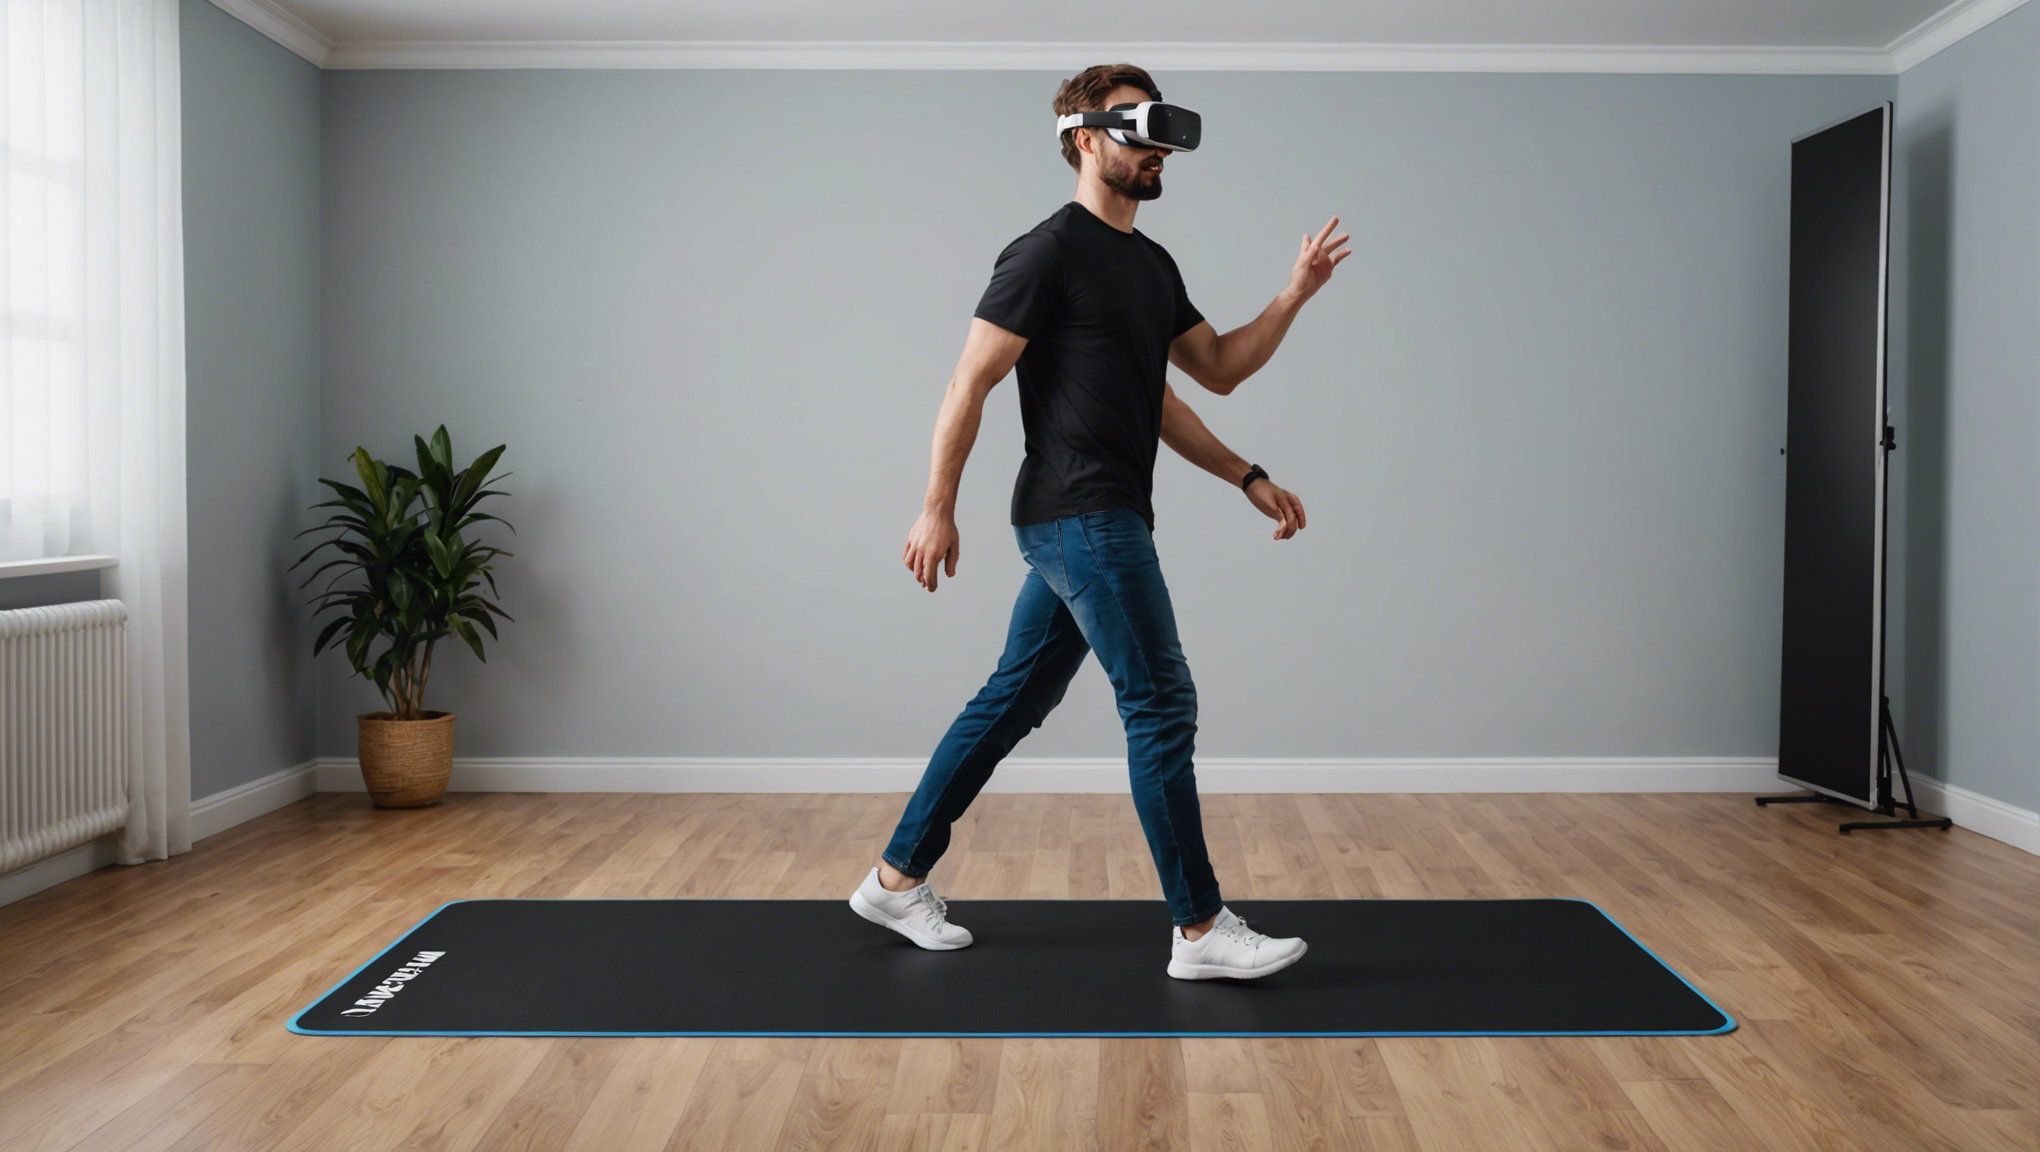 découvrez dans cet article si l'on peut réellement marcher en réalité virtuelle avec un tapis de marche et explorez les possibilités de cette technologie révolutionnaire.